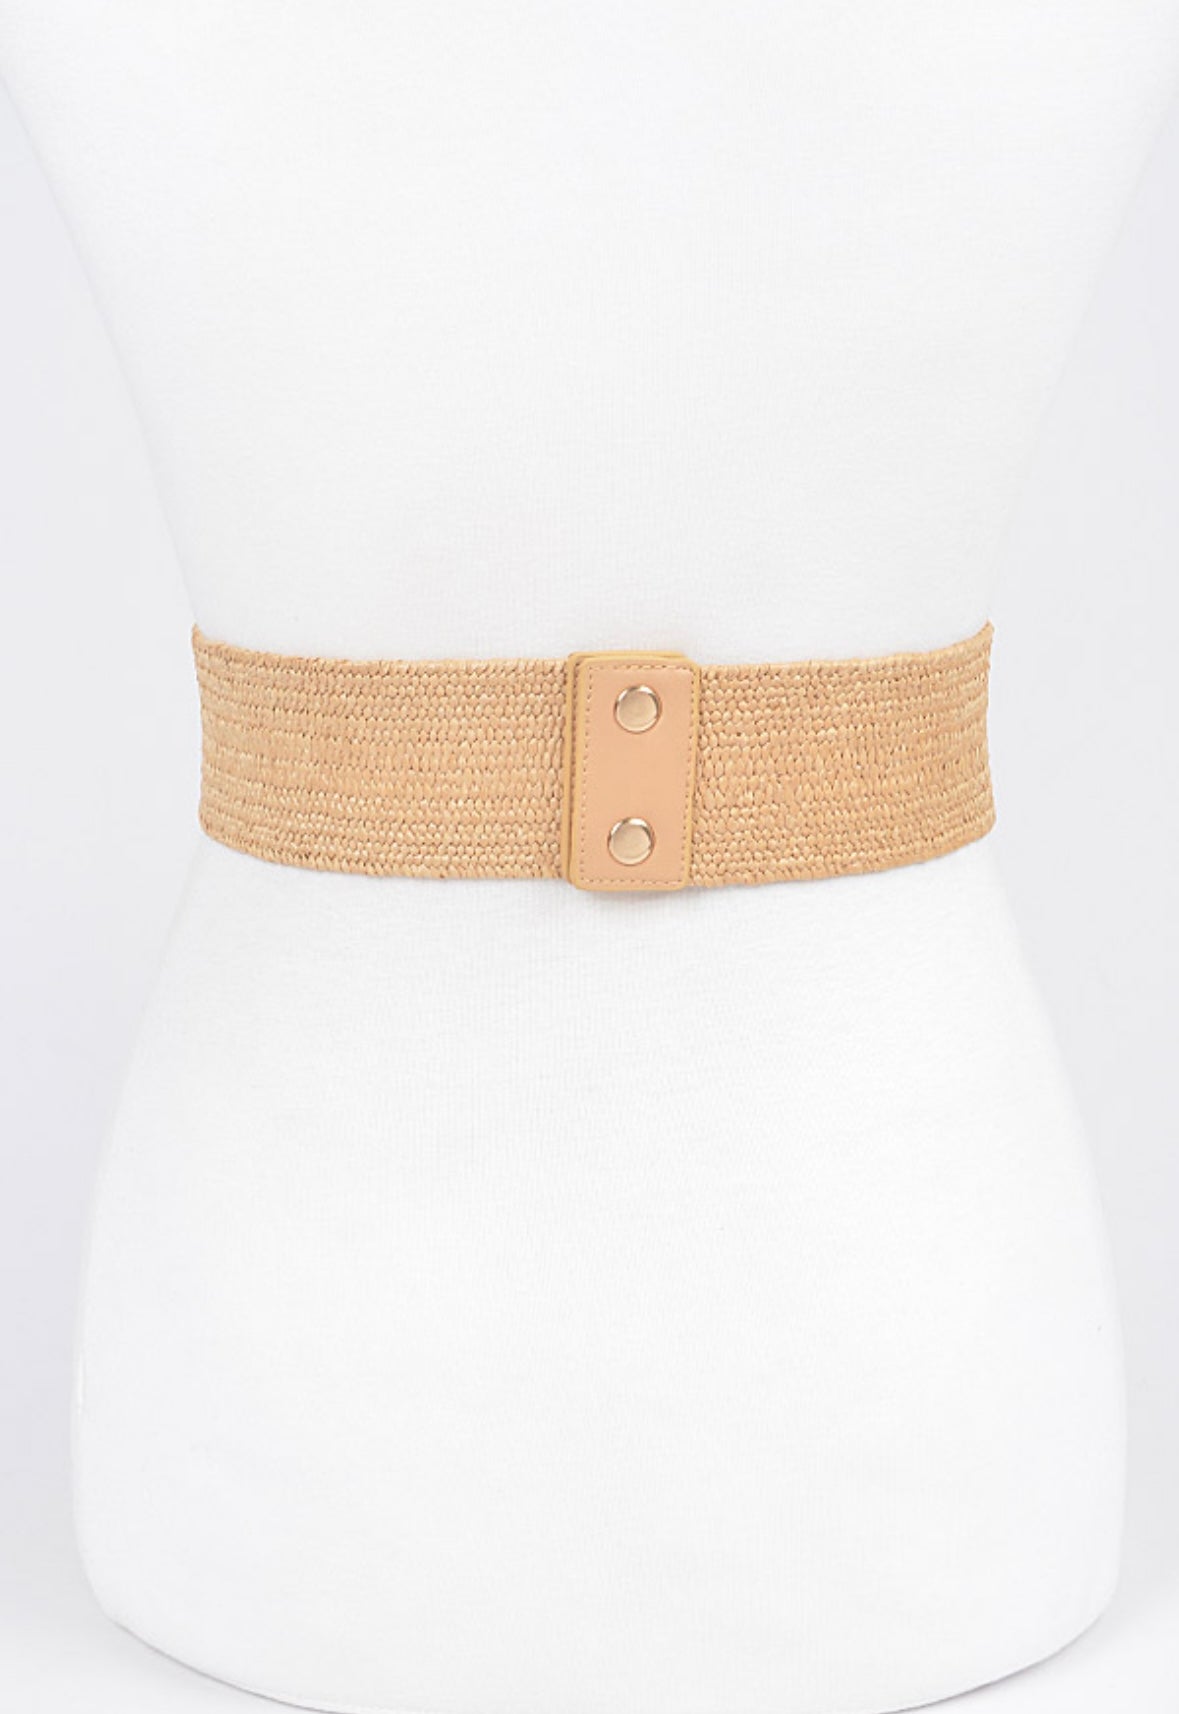 Versatile straw belt for sundresses